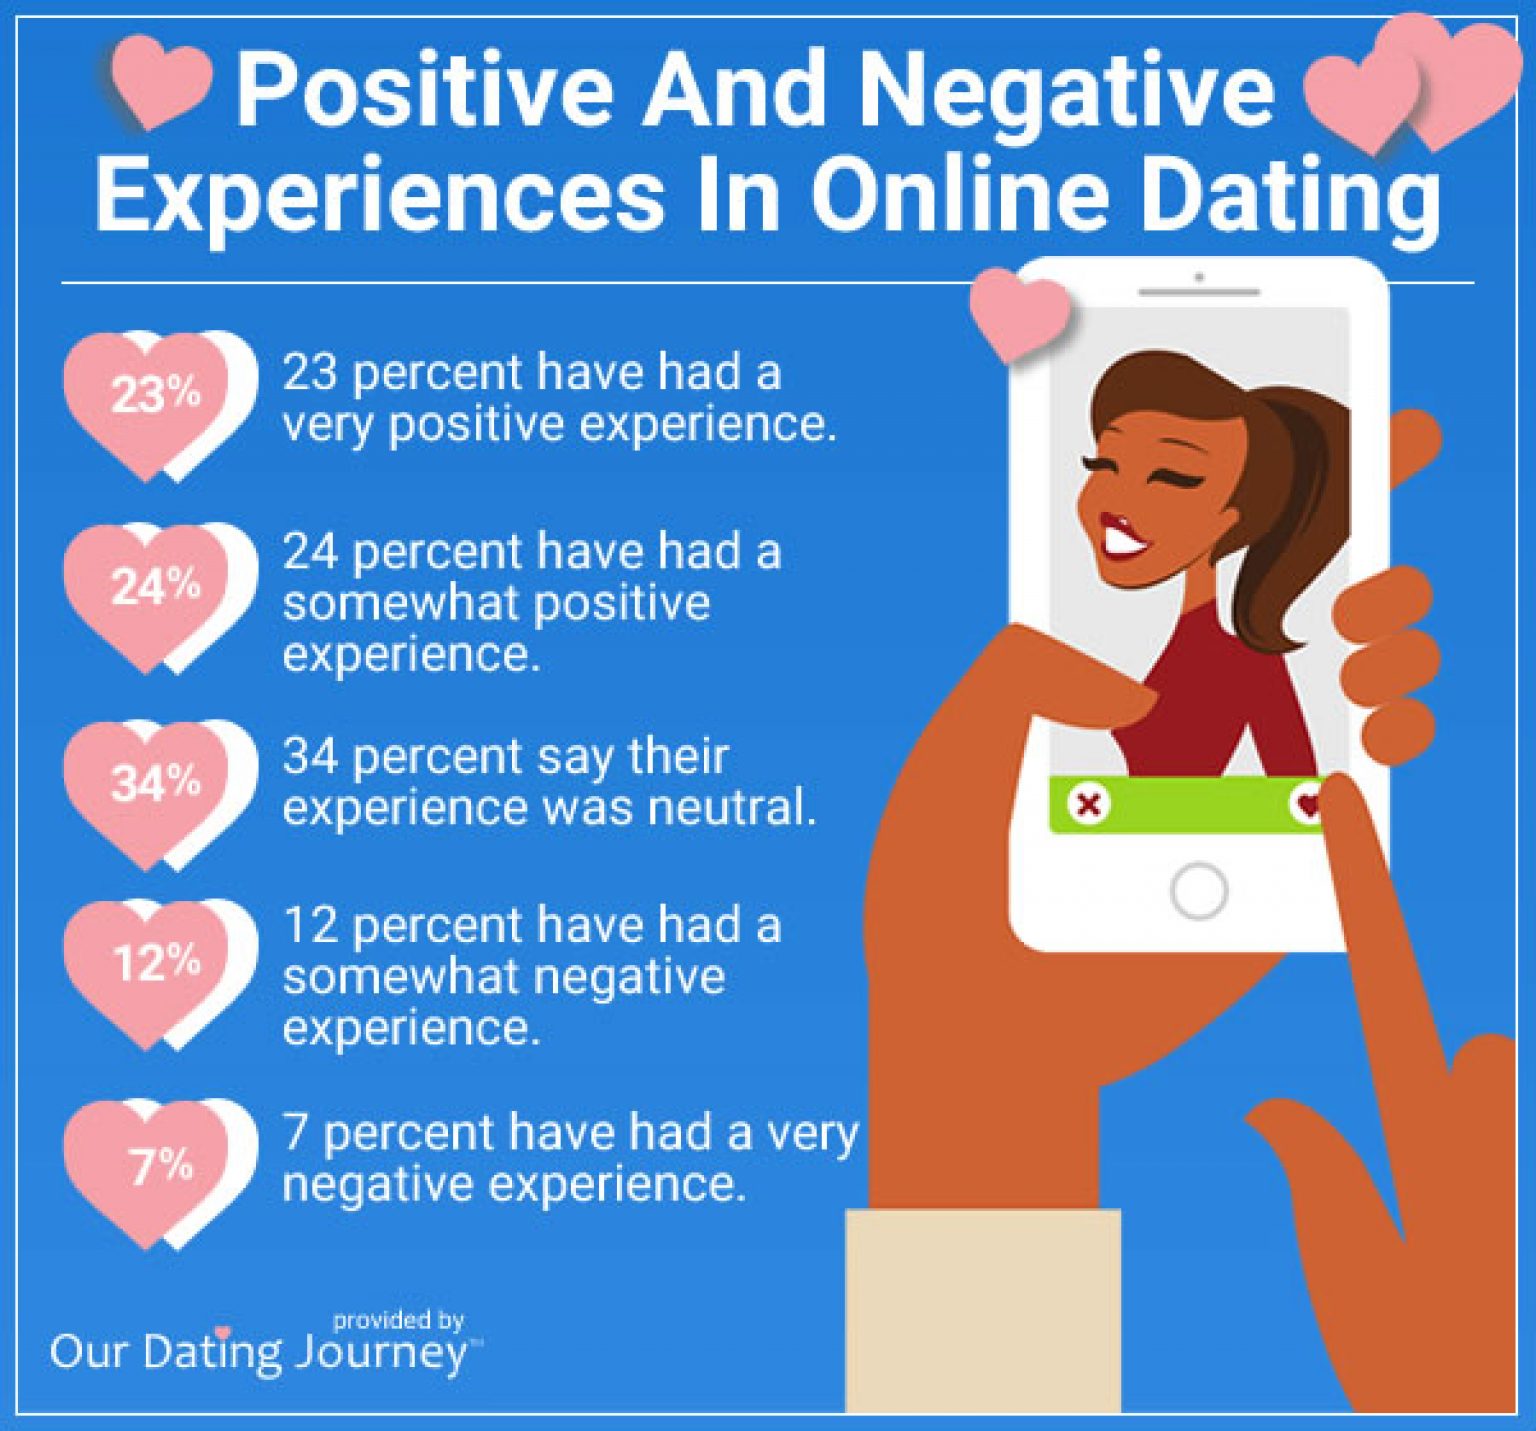 U.S. dating website or app usage 2020 | Statista